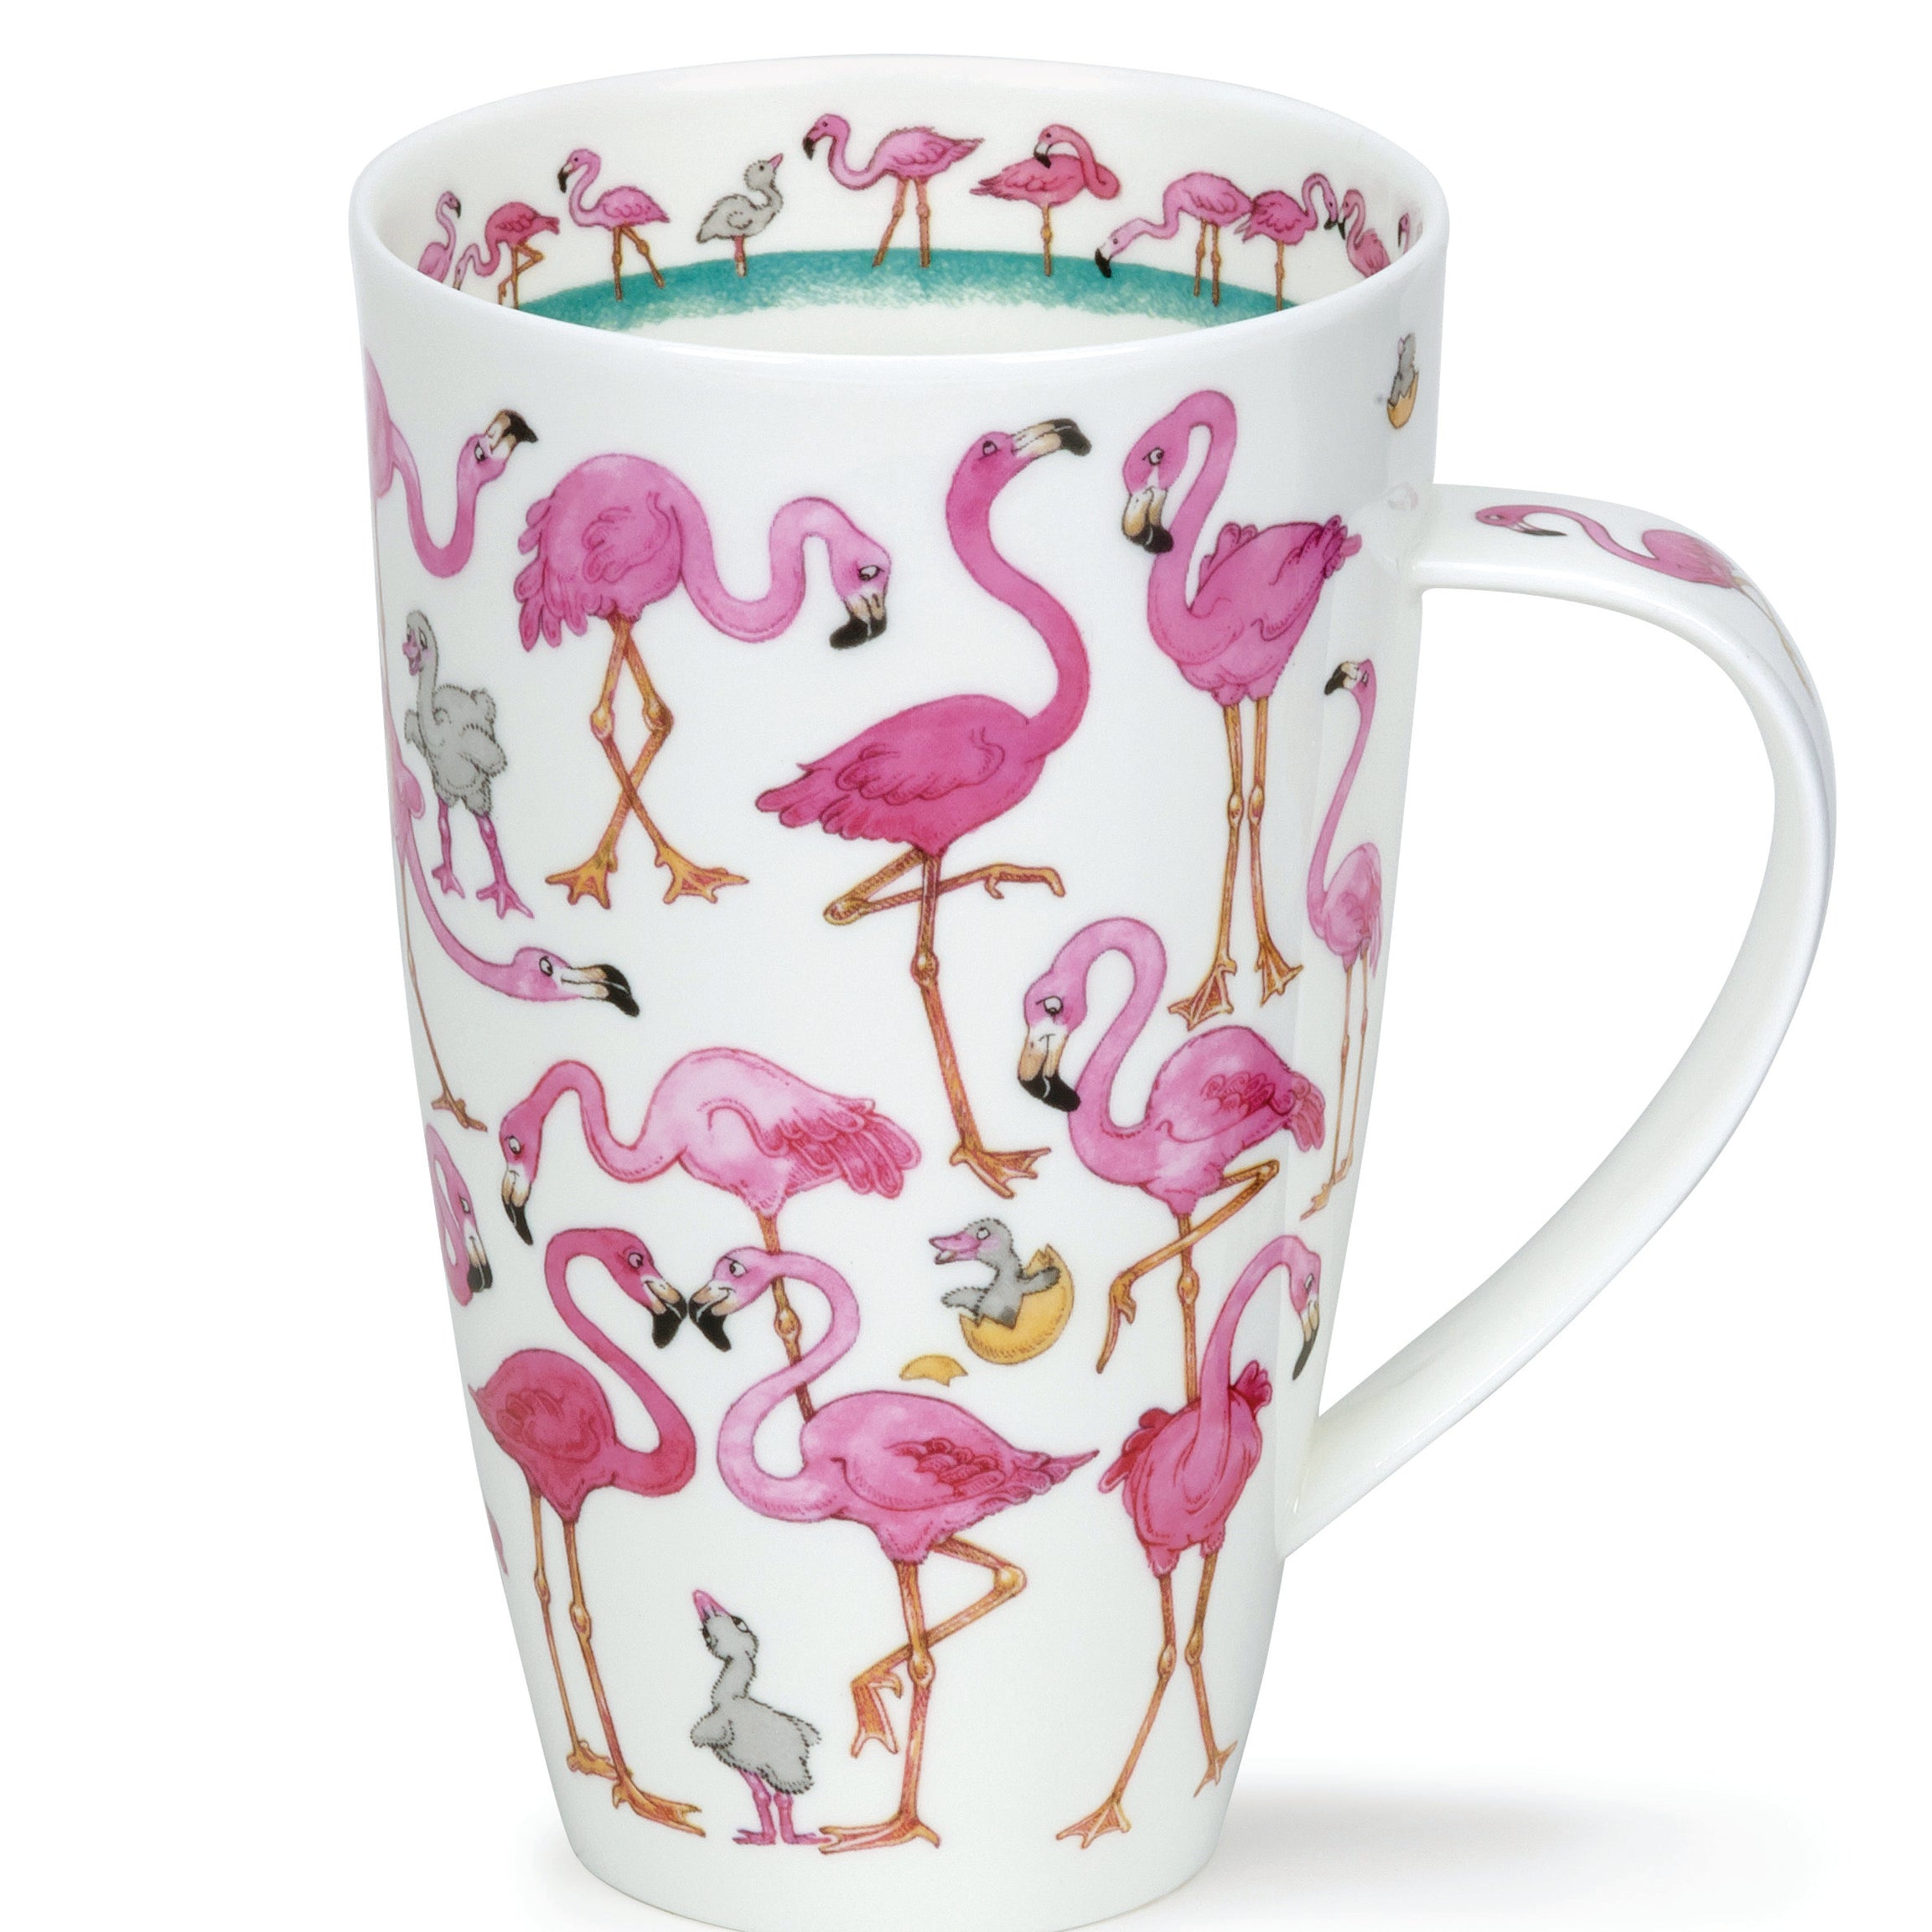 Dunoon Becher Teetasse Kaffeetasse Henley Flamingo Flamboyance pink